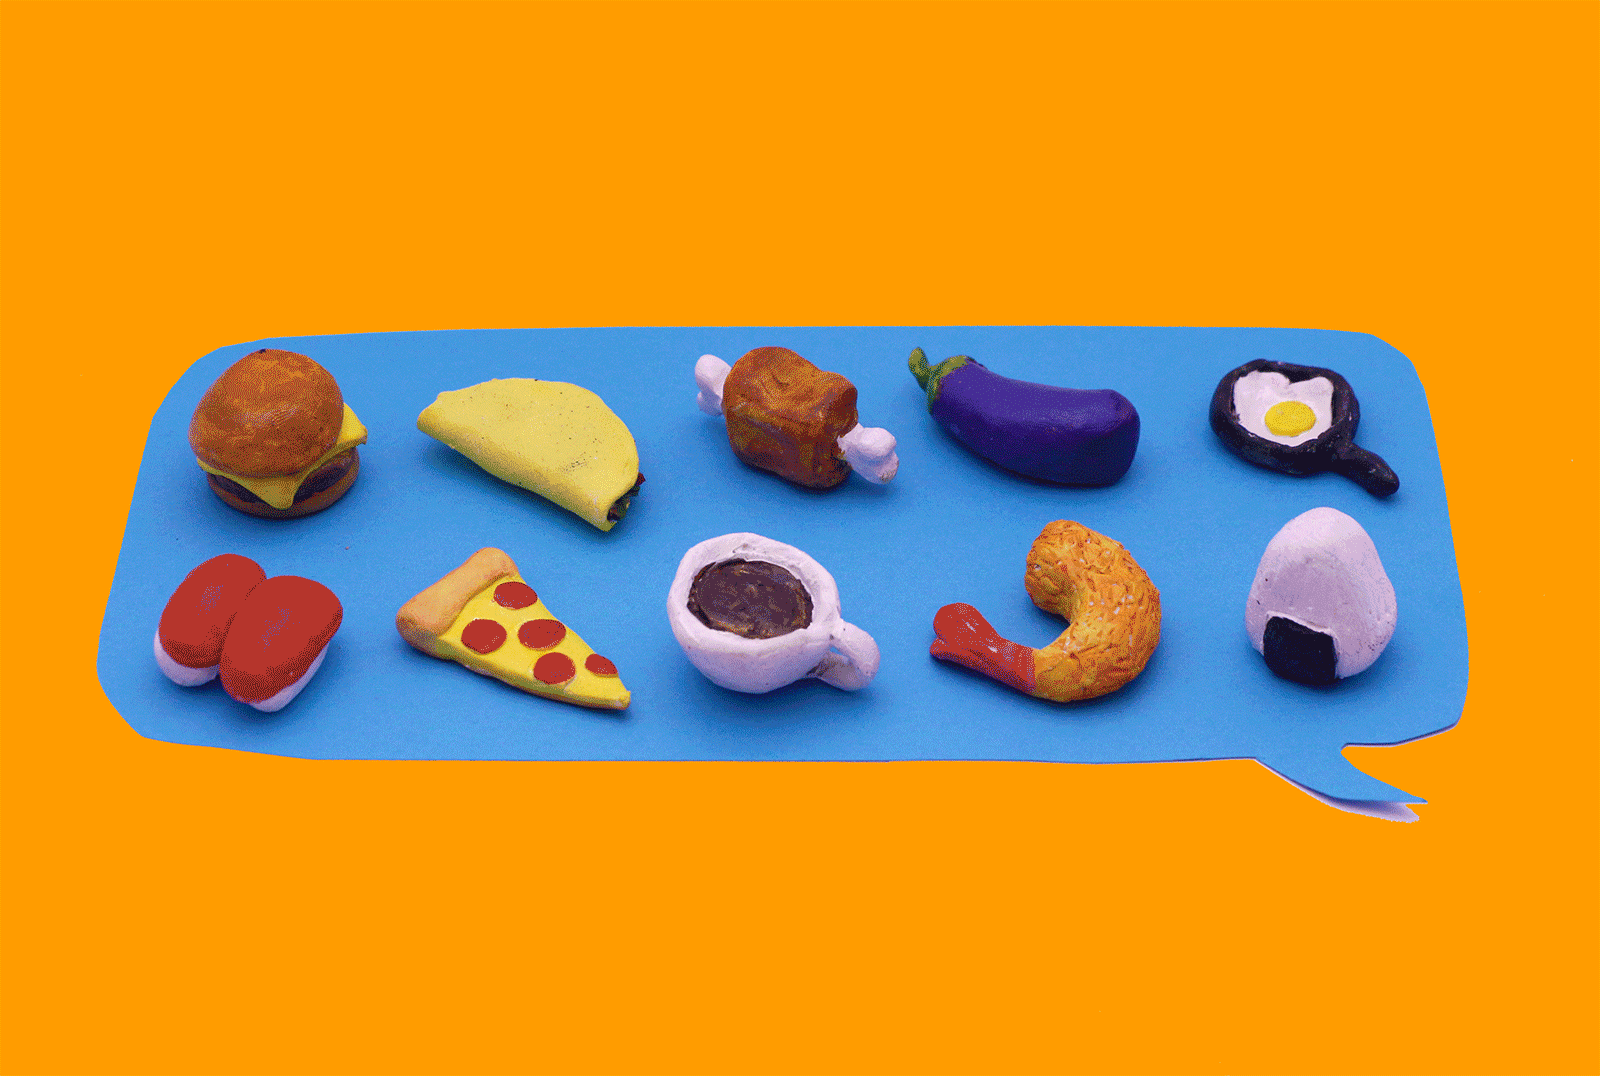 Food Emojis